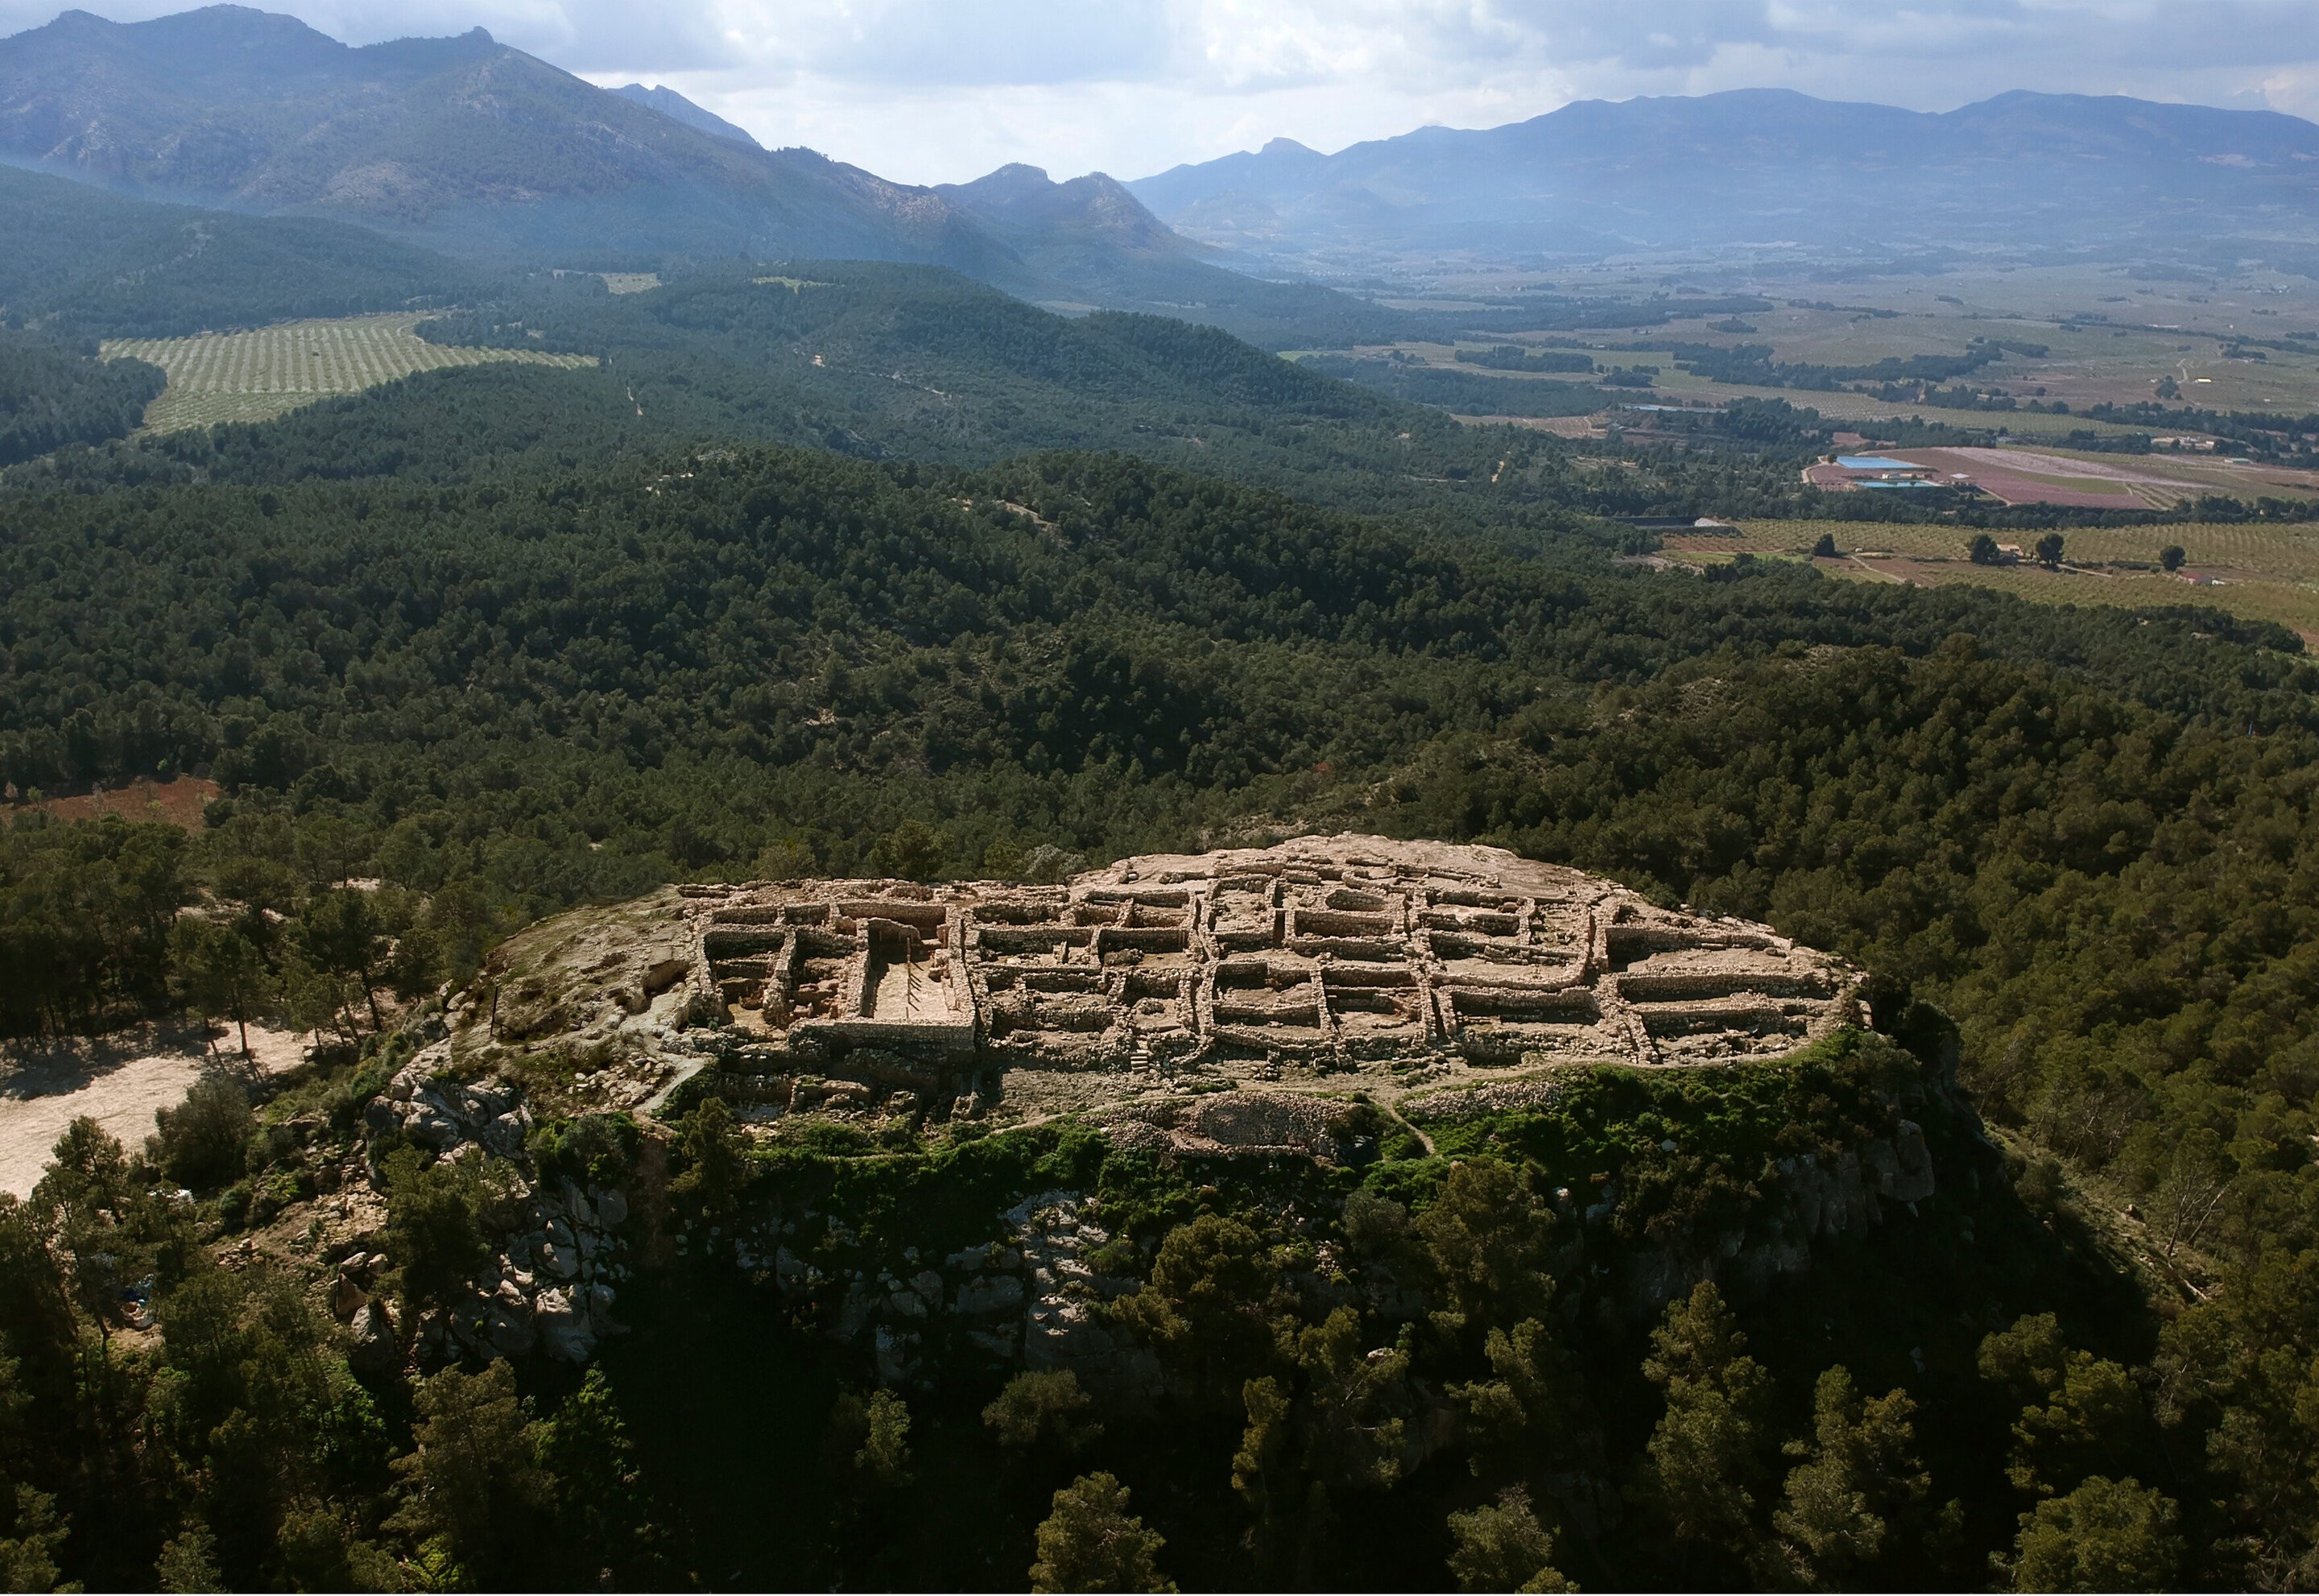 O sítio arqueológico de Almoloya, no sudeste da Espanha  (Foto: Divulgação/ASOME-UAB)